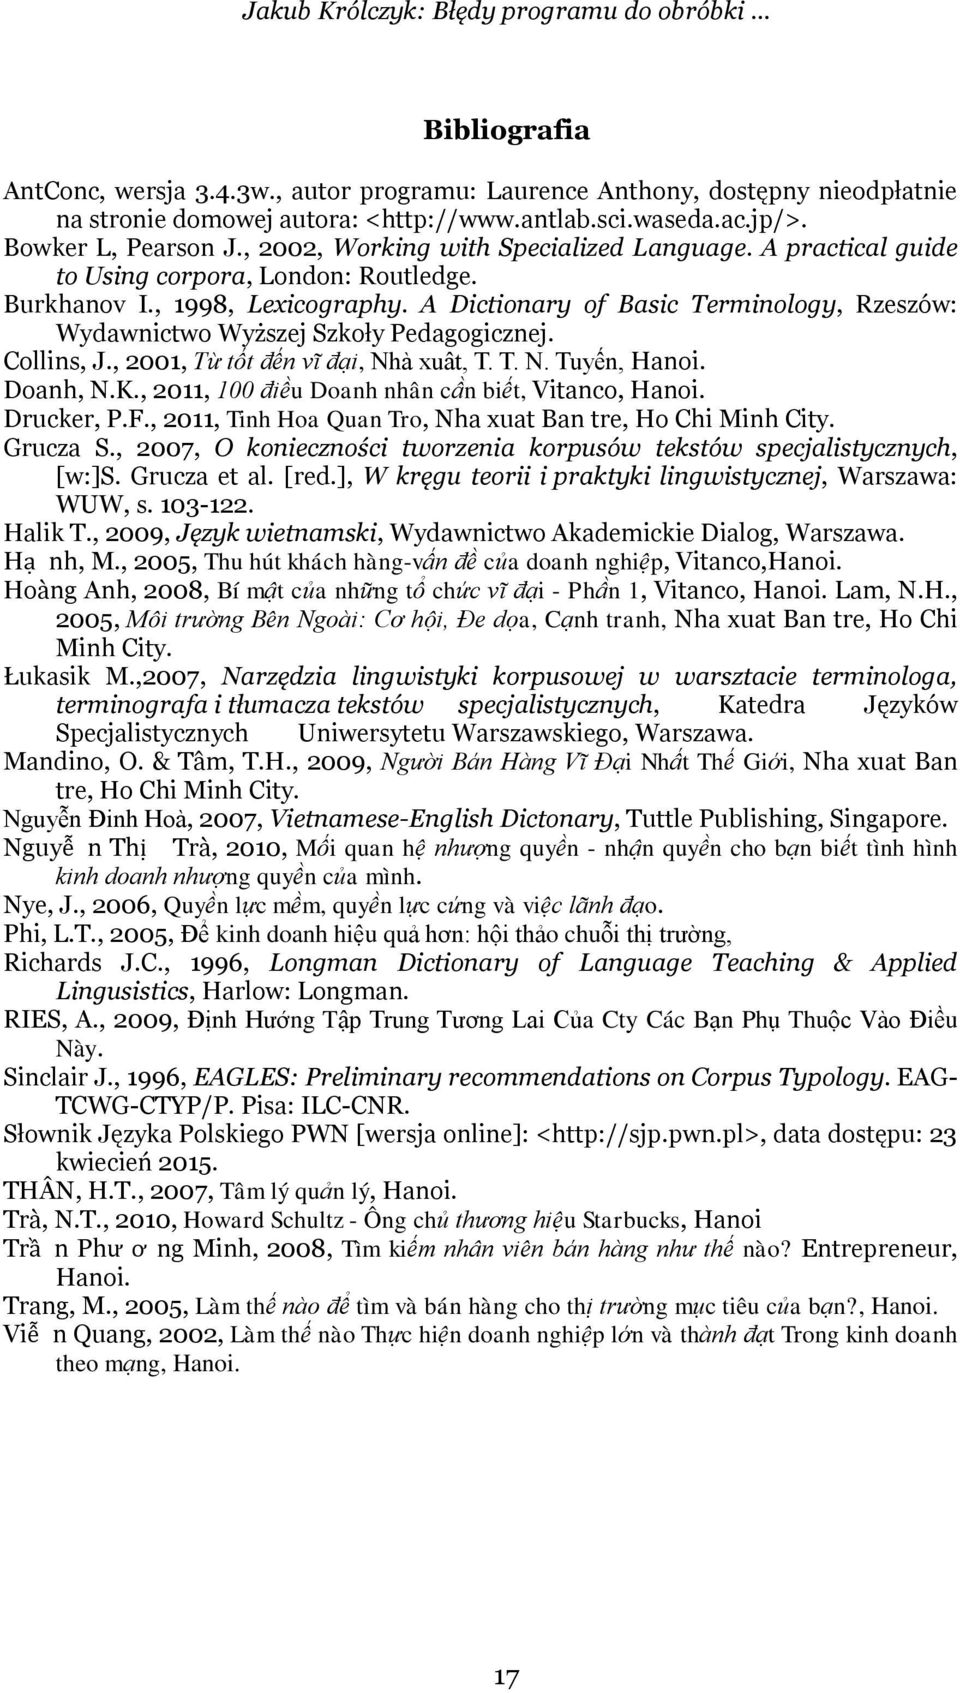 A Dictionary of Basic Terminology, Rzeszów: Wydawnictwo Wyższej Szkoły Pedagogicznej. Collins, J., 2001, Tư tốt đến vĩ đại, Nha xuât, T. T. N. Tuyến, Hanoi. Doanh, N.K.